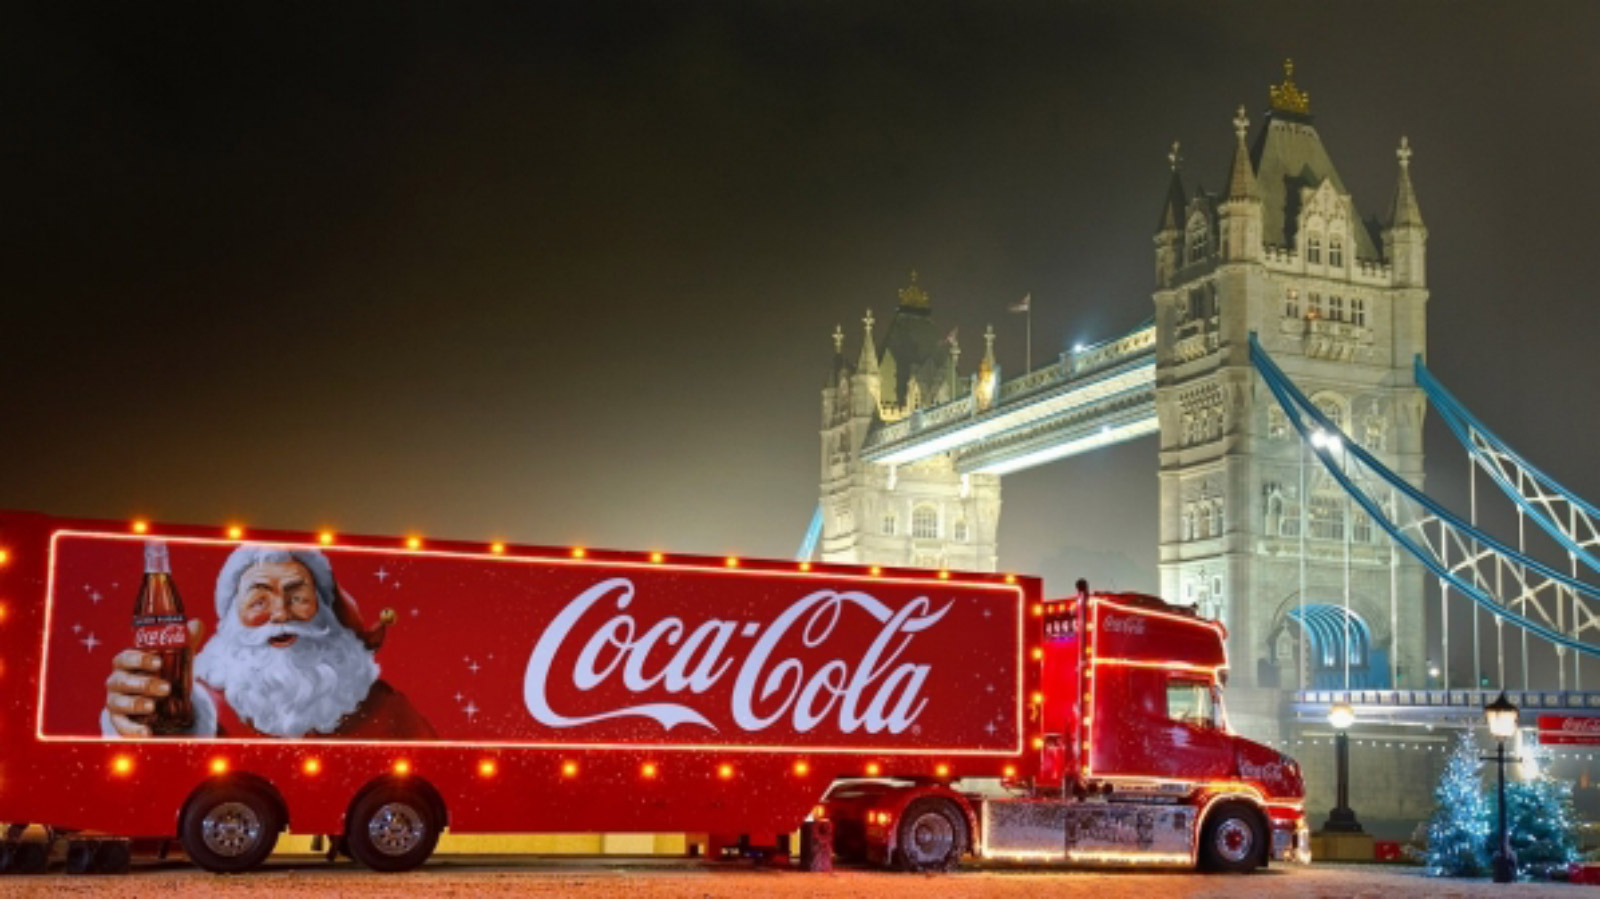 Ciężarówka COCA-COLI ruszyła - święta w reklamie oficjalnie rozpoczęte święta Bożego Narodzenia mediarun coca cola ciezarowka 2019